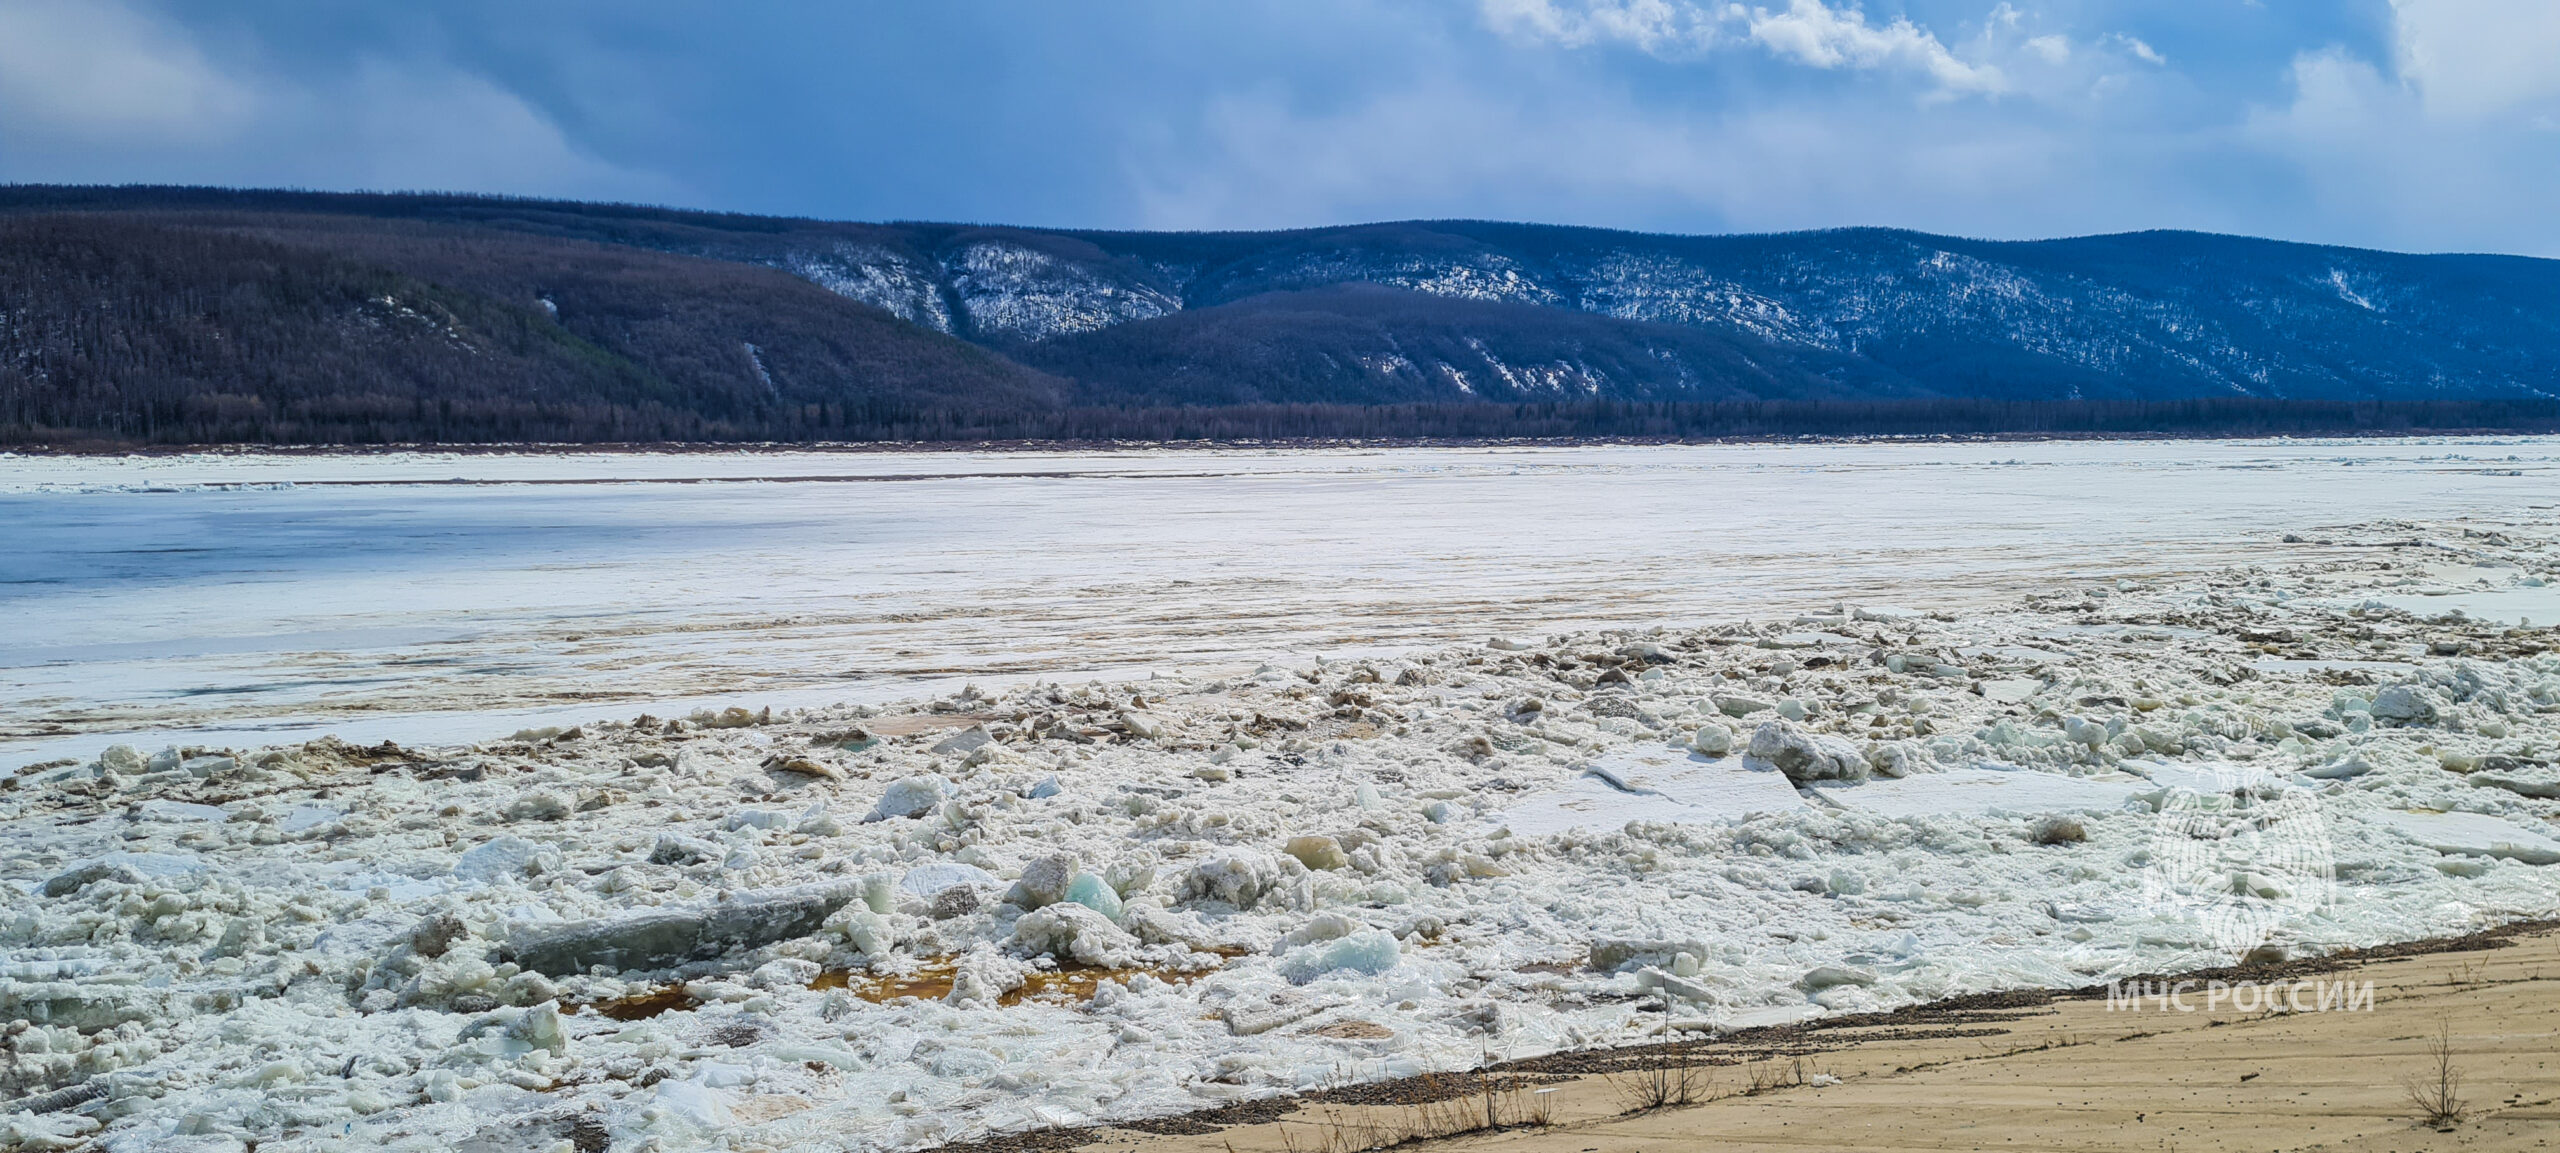 Взрывные работы для ликвидации ледовых заторов проведены на реке Амге